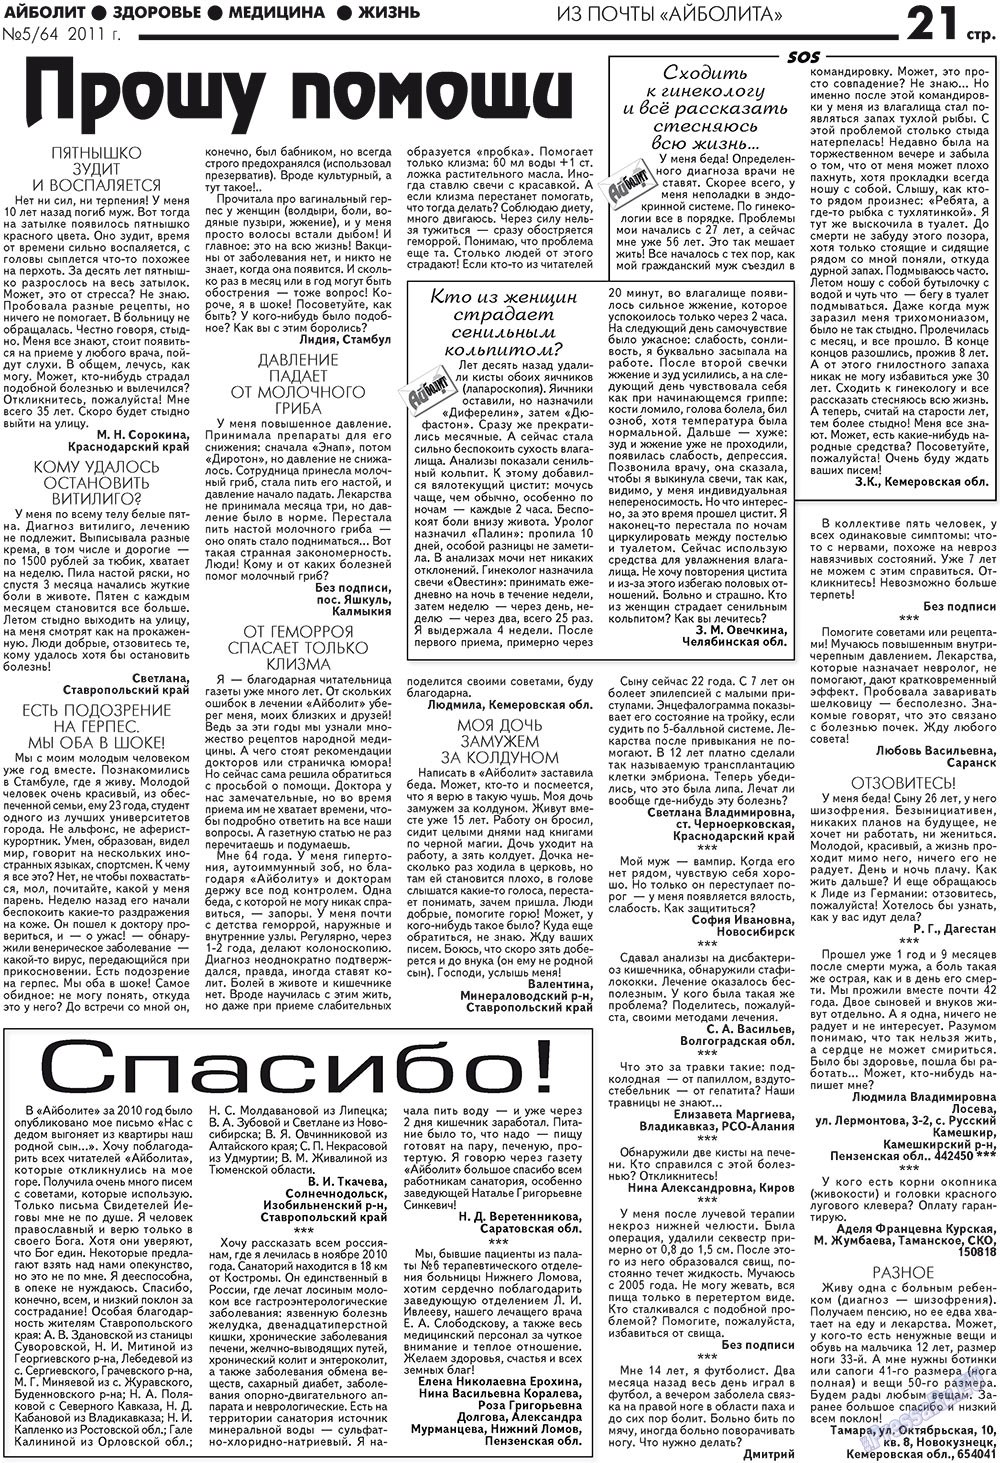 АйБолит, газета. 2011 №5 стр.21